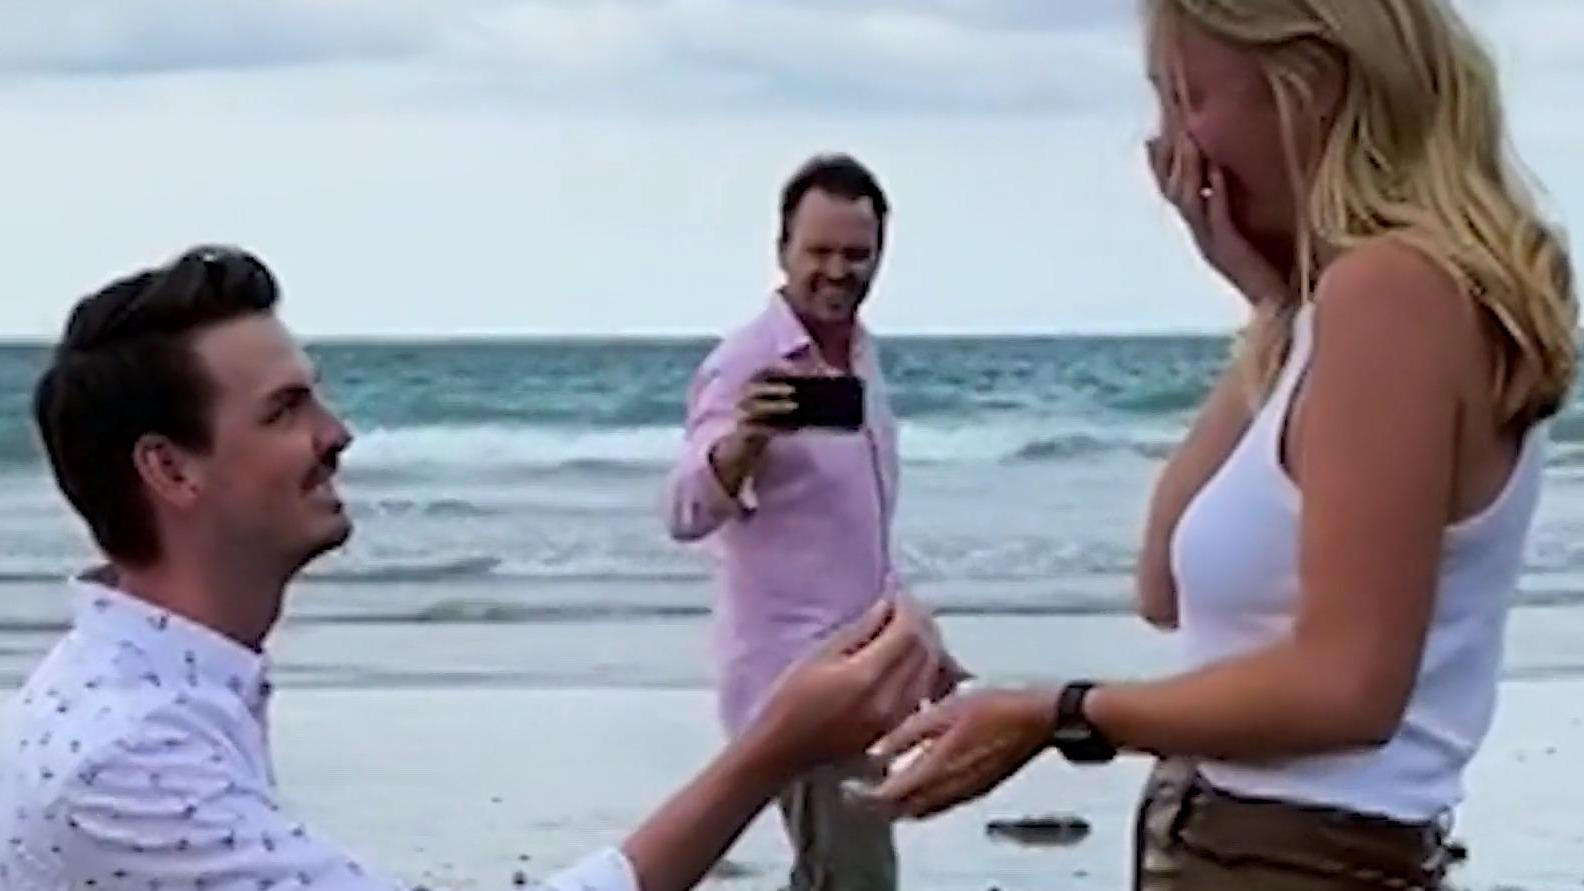 Vater versaut romantisches Verlobungsvideo Er läuft direkt durchs Bild!